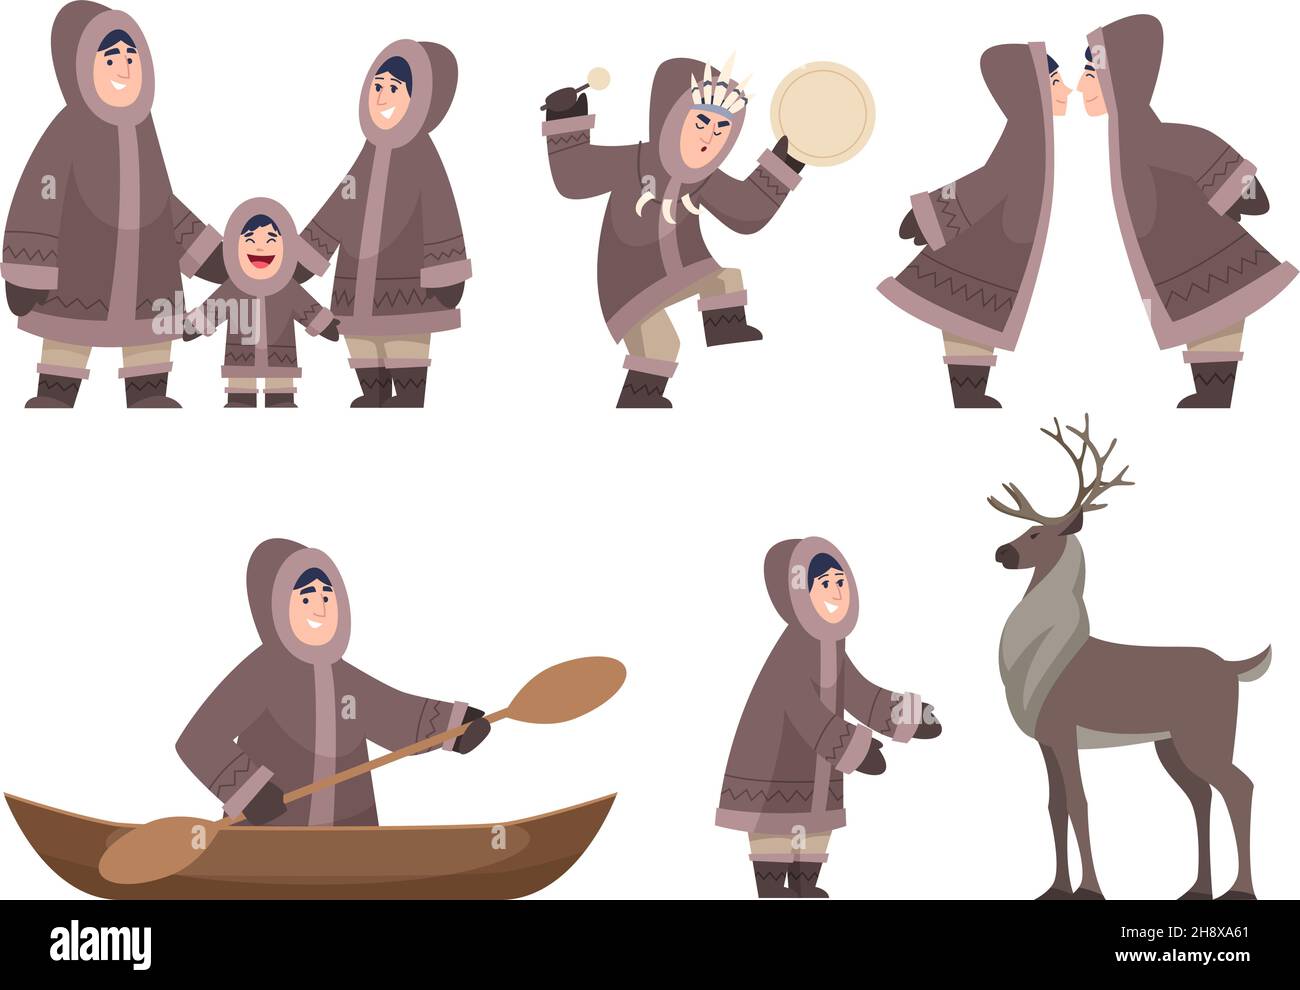 Personnages esquimaux.Personnages traditionnels ethniques authentiques froid de la famille alaska exact vecteur caricature heureux personnes isolées Illustration de Vecteur